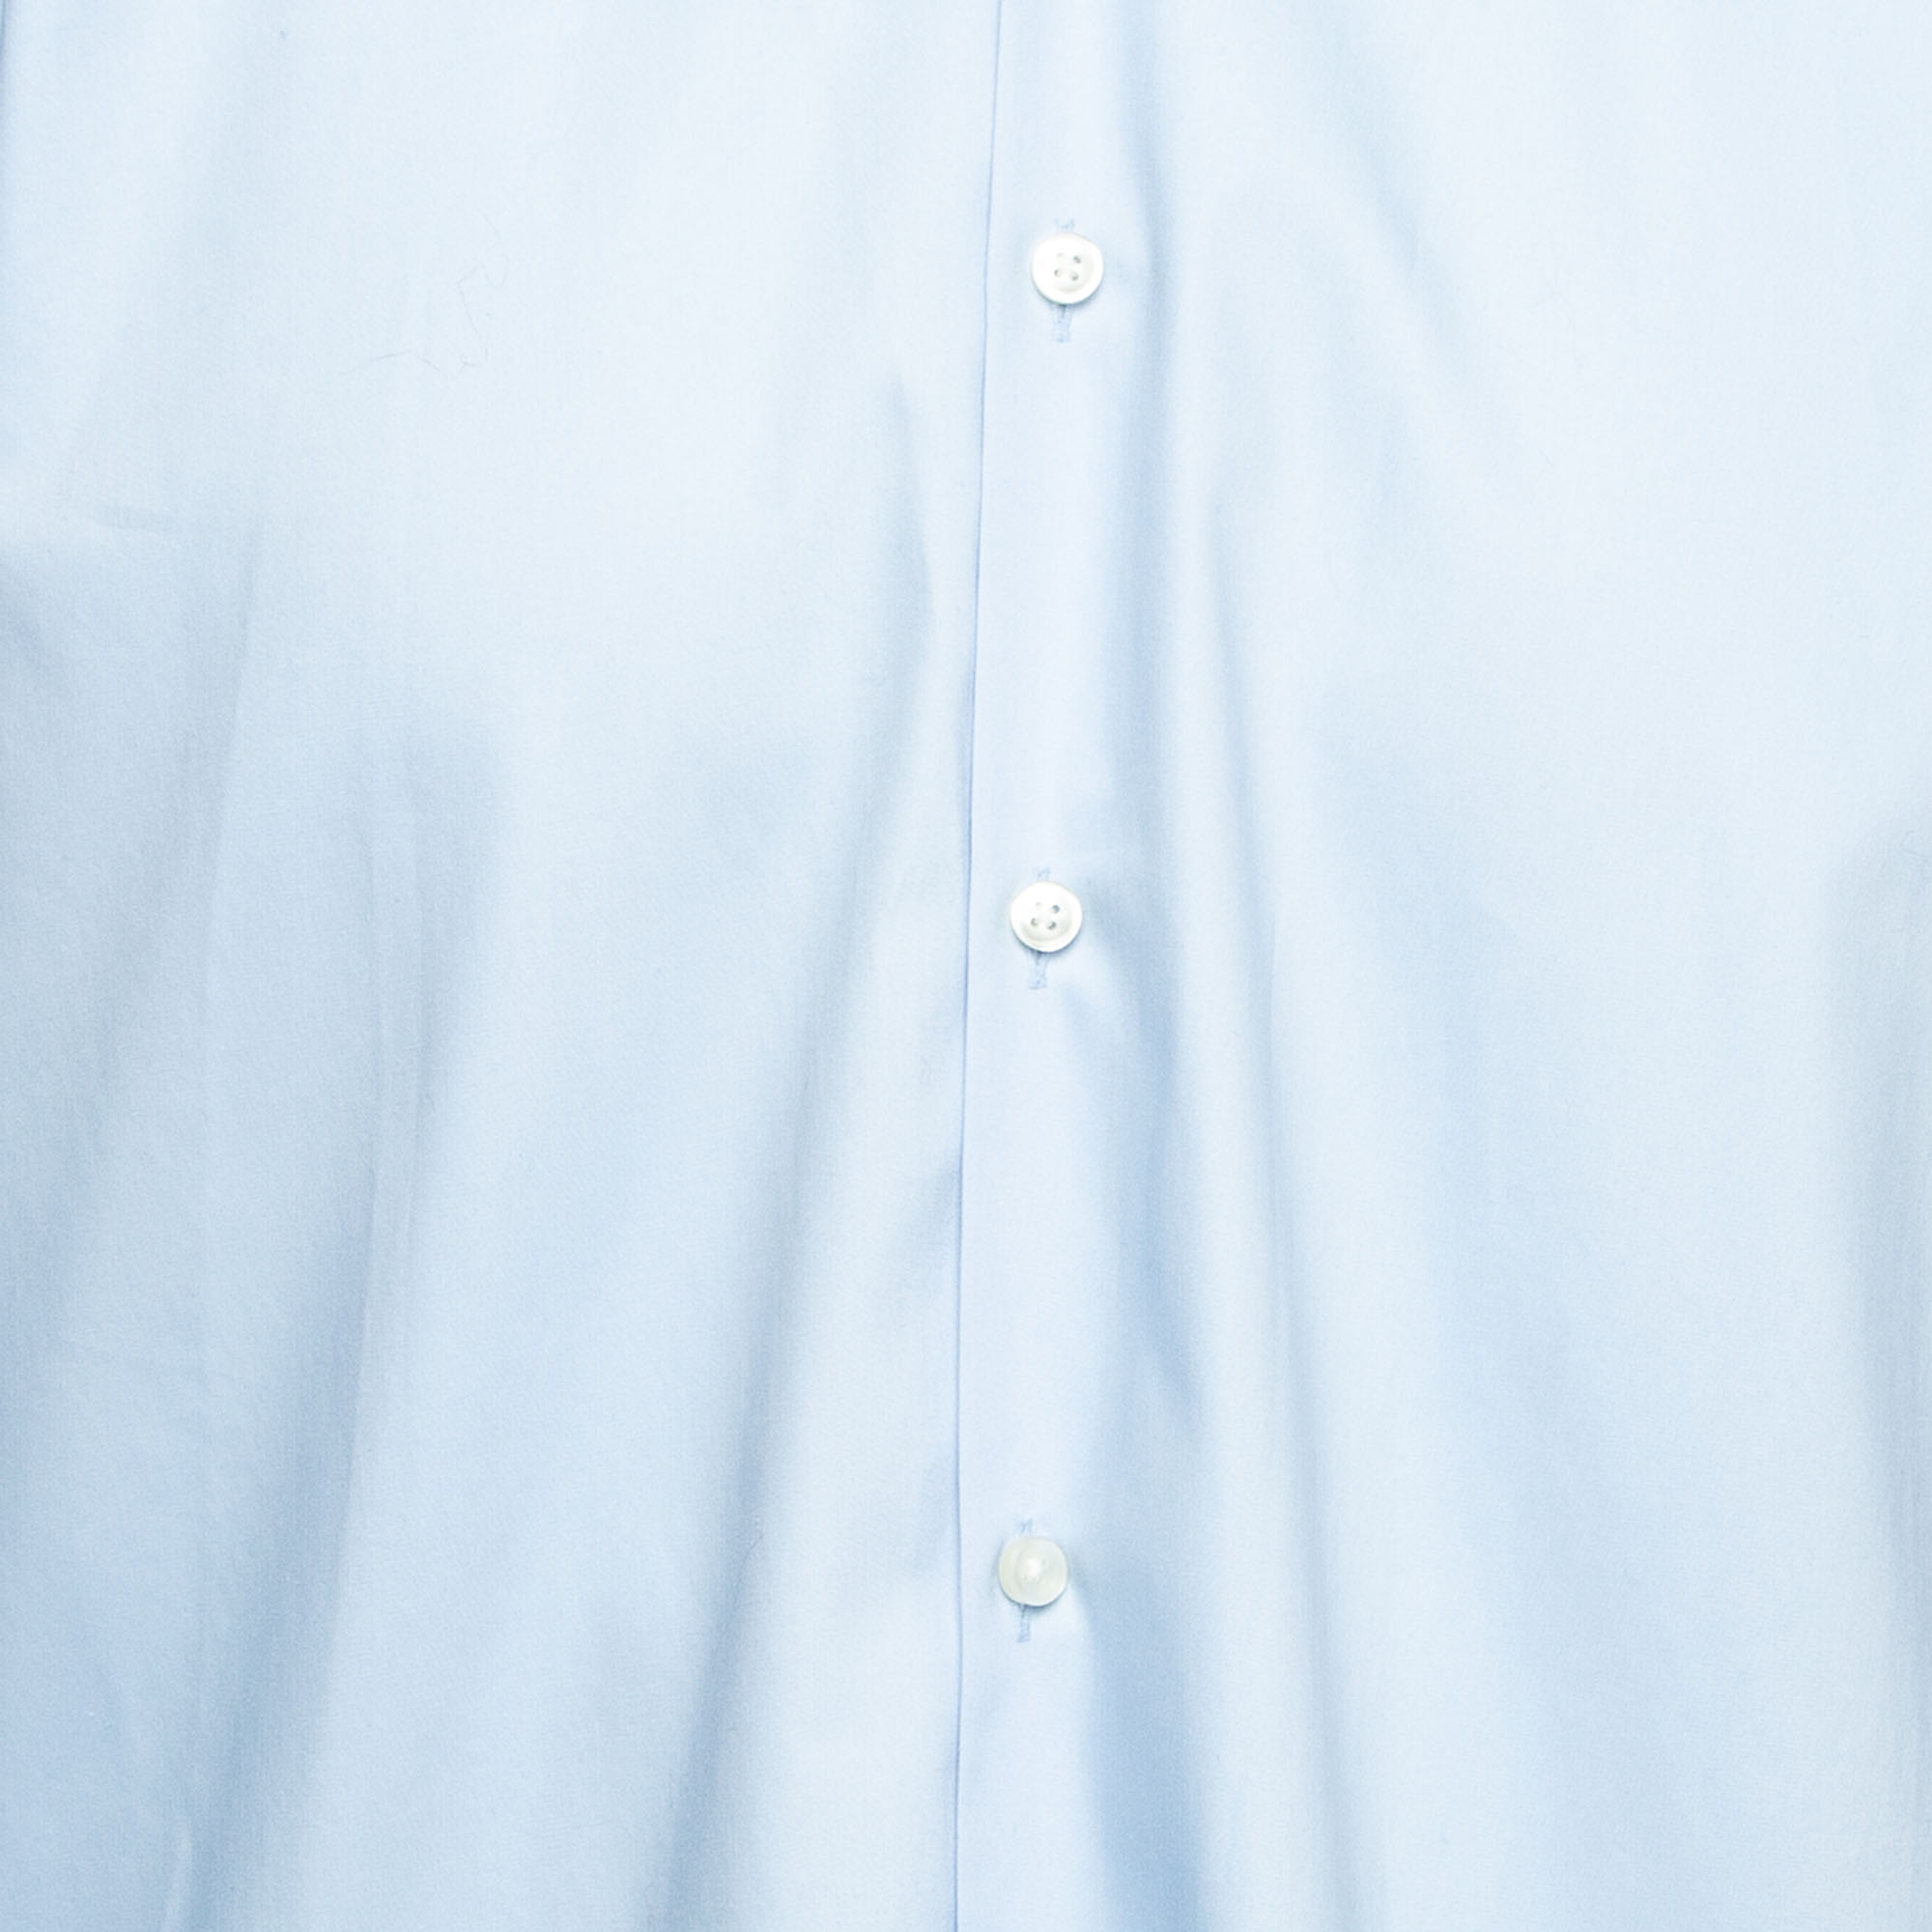 Boss By Hugo Boss Blue Cotton Button Front Slim Fit Shirt XXL